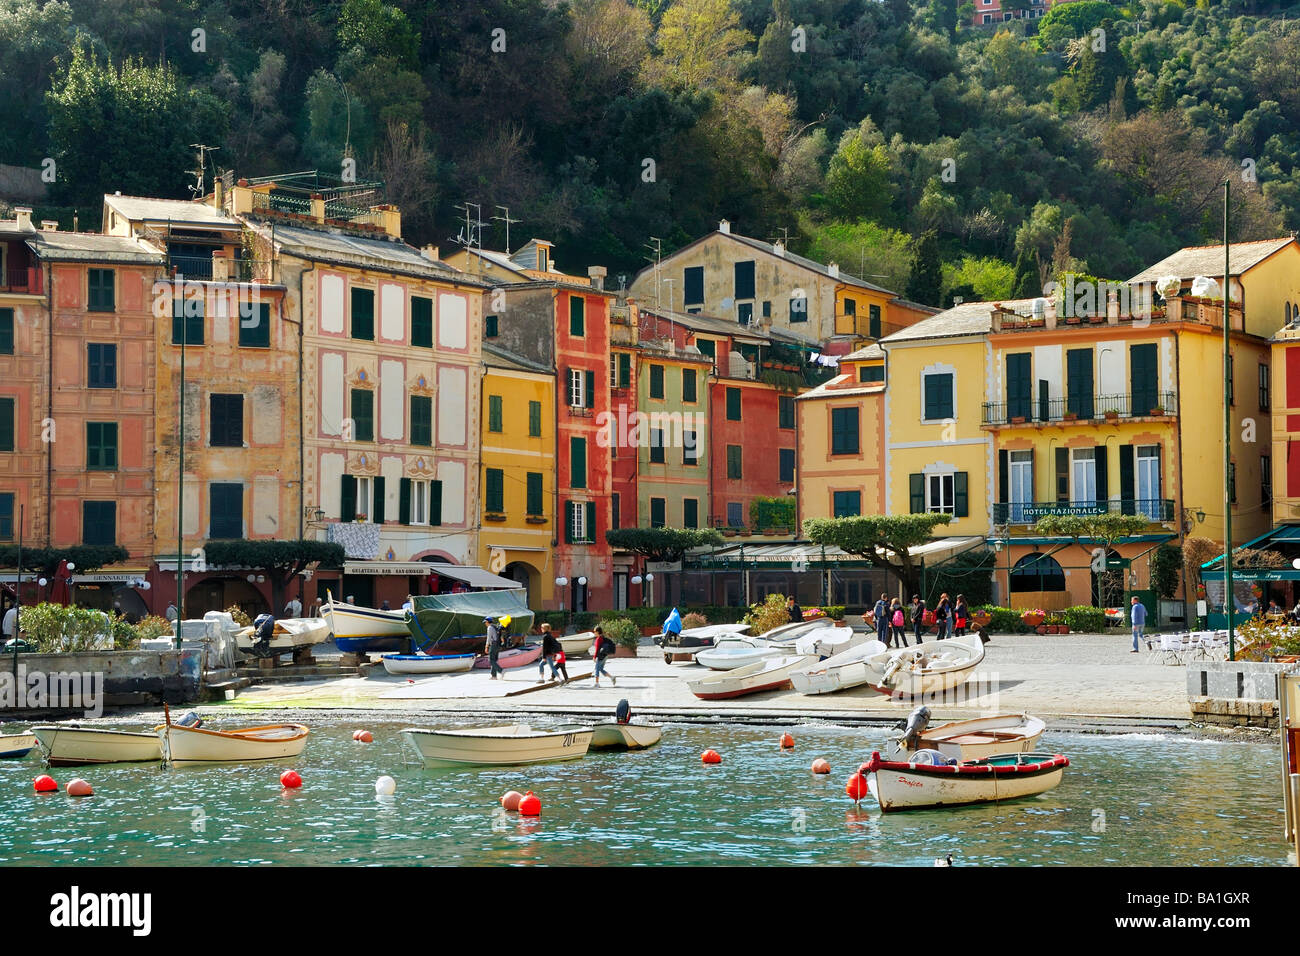 Die Häuser umgeben die Stadt Plaza und den Hafen in der Bilder mediterrane Stadt Portofino, Ligurien, Italien Stockfoto